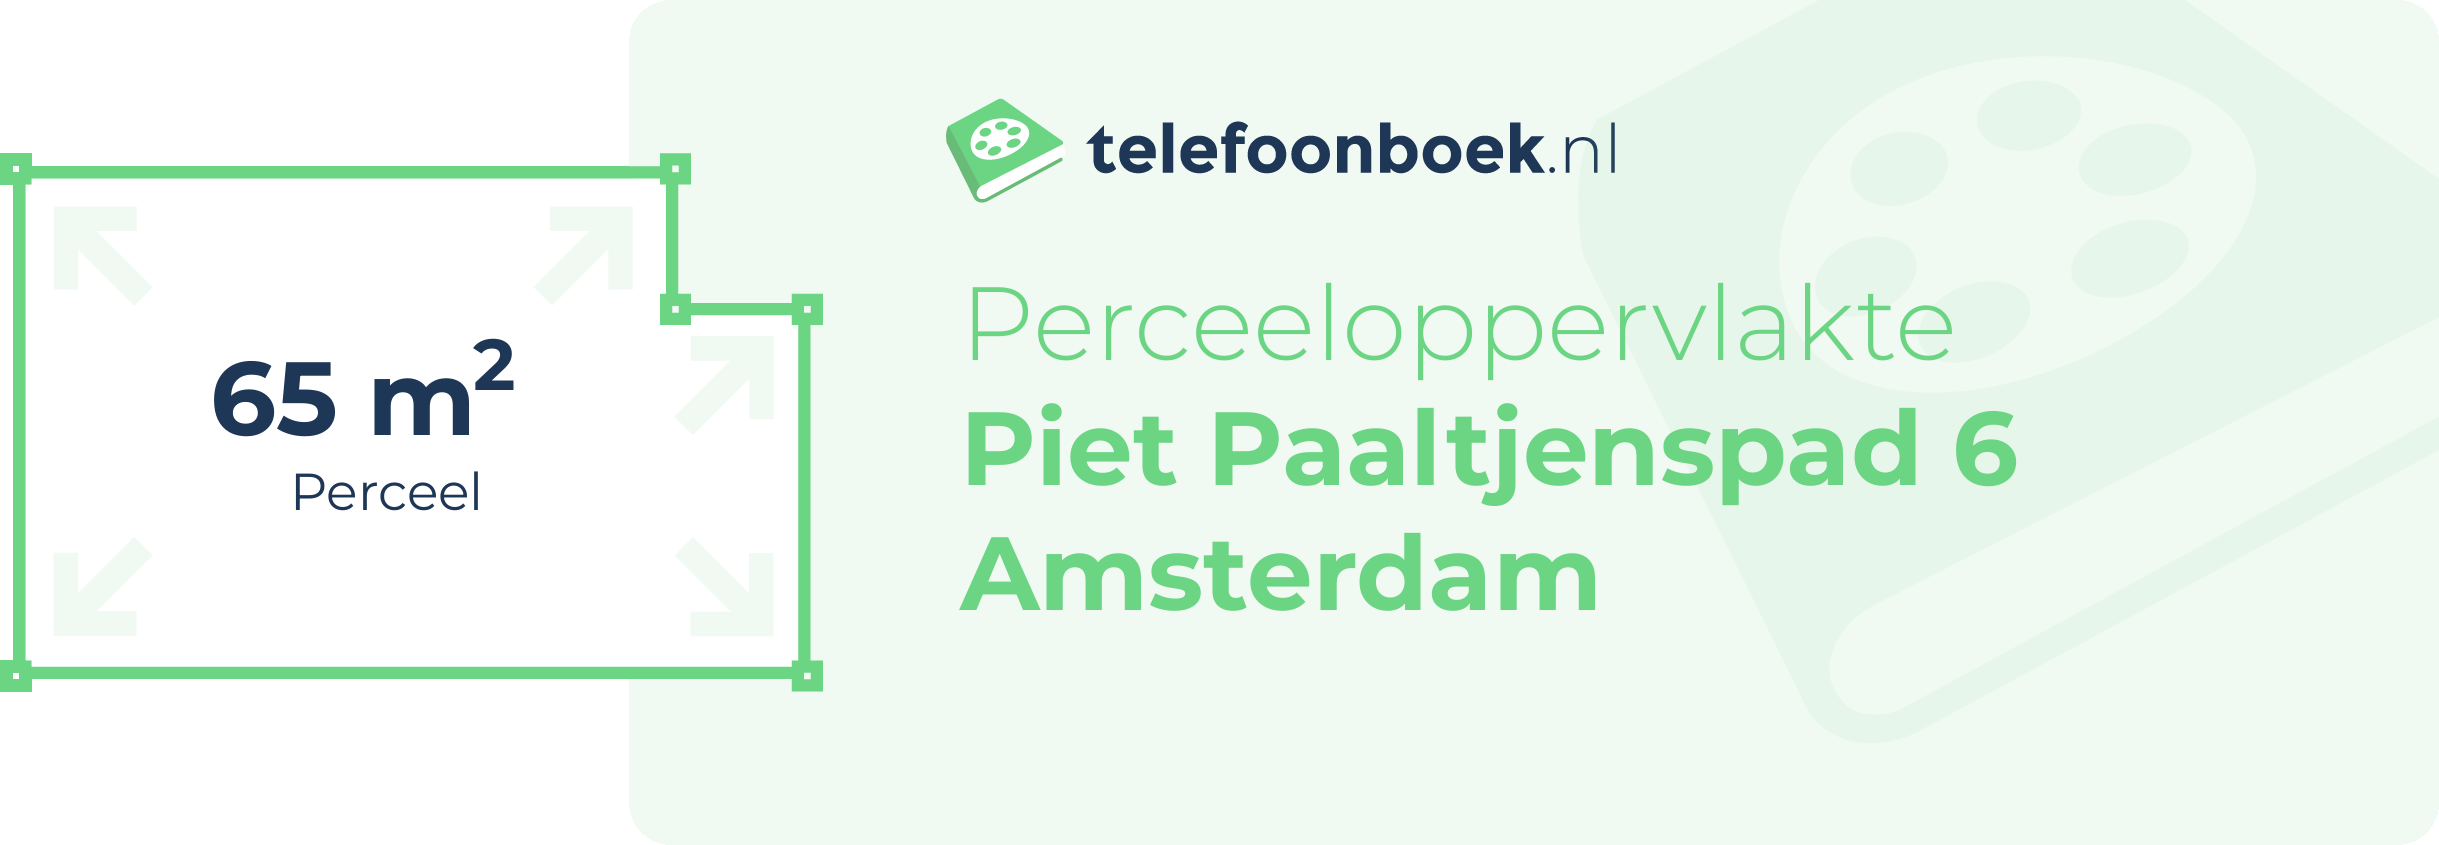 Perceeloppervlakte Piet Paaltjenspad 6 Amsterdam